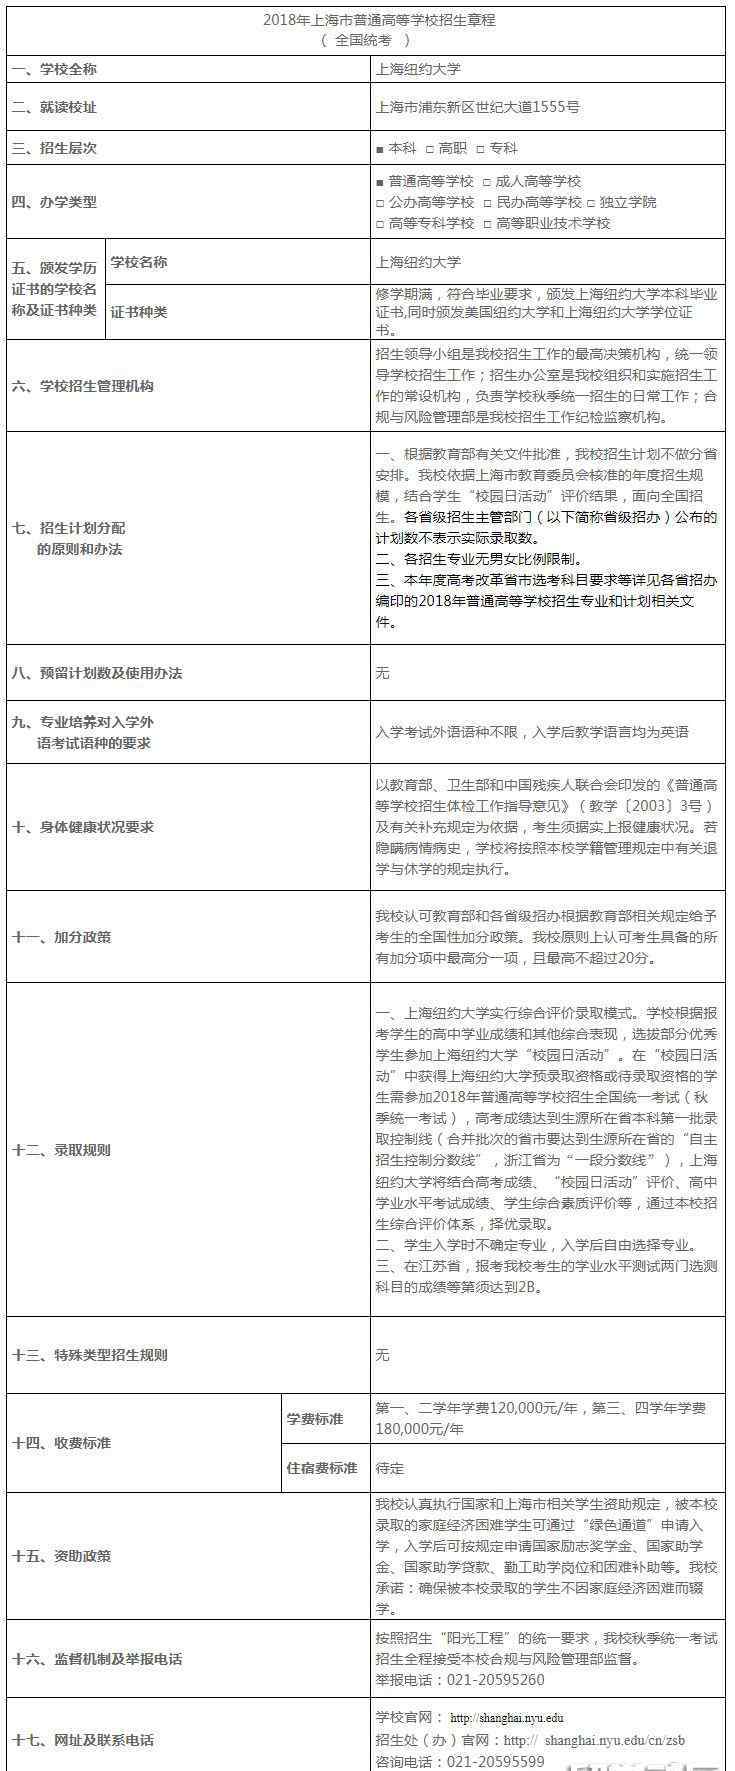 上海纽约大学官网 上海纽约大学2018招生章程